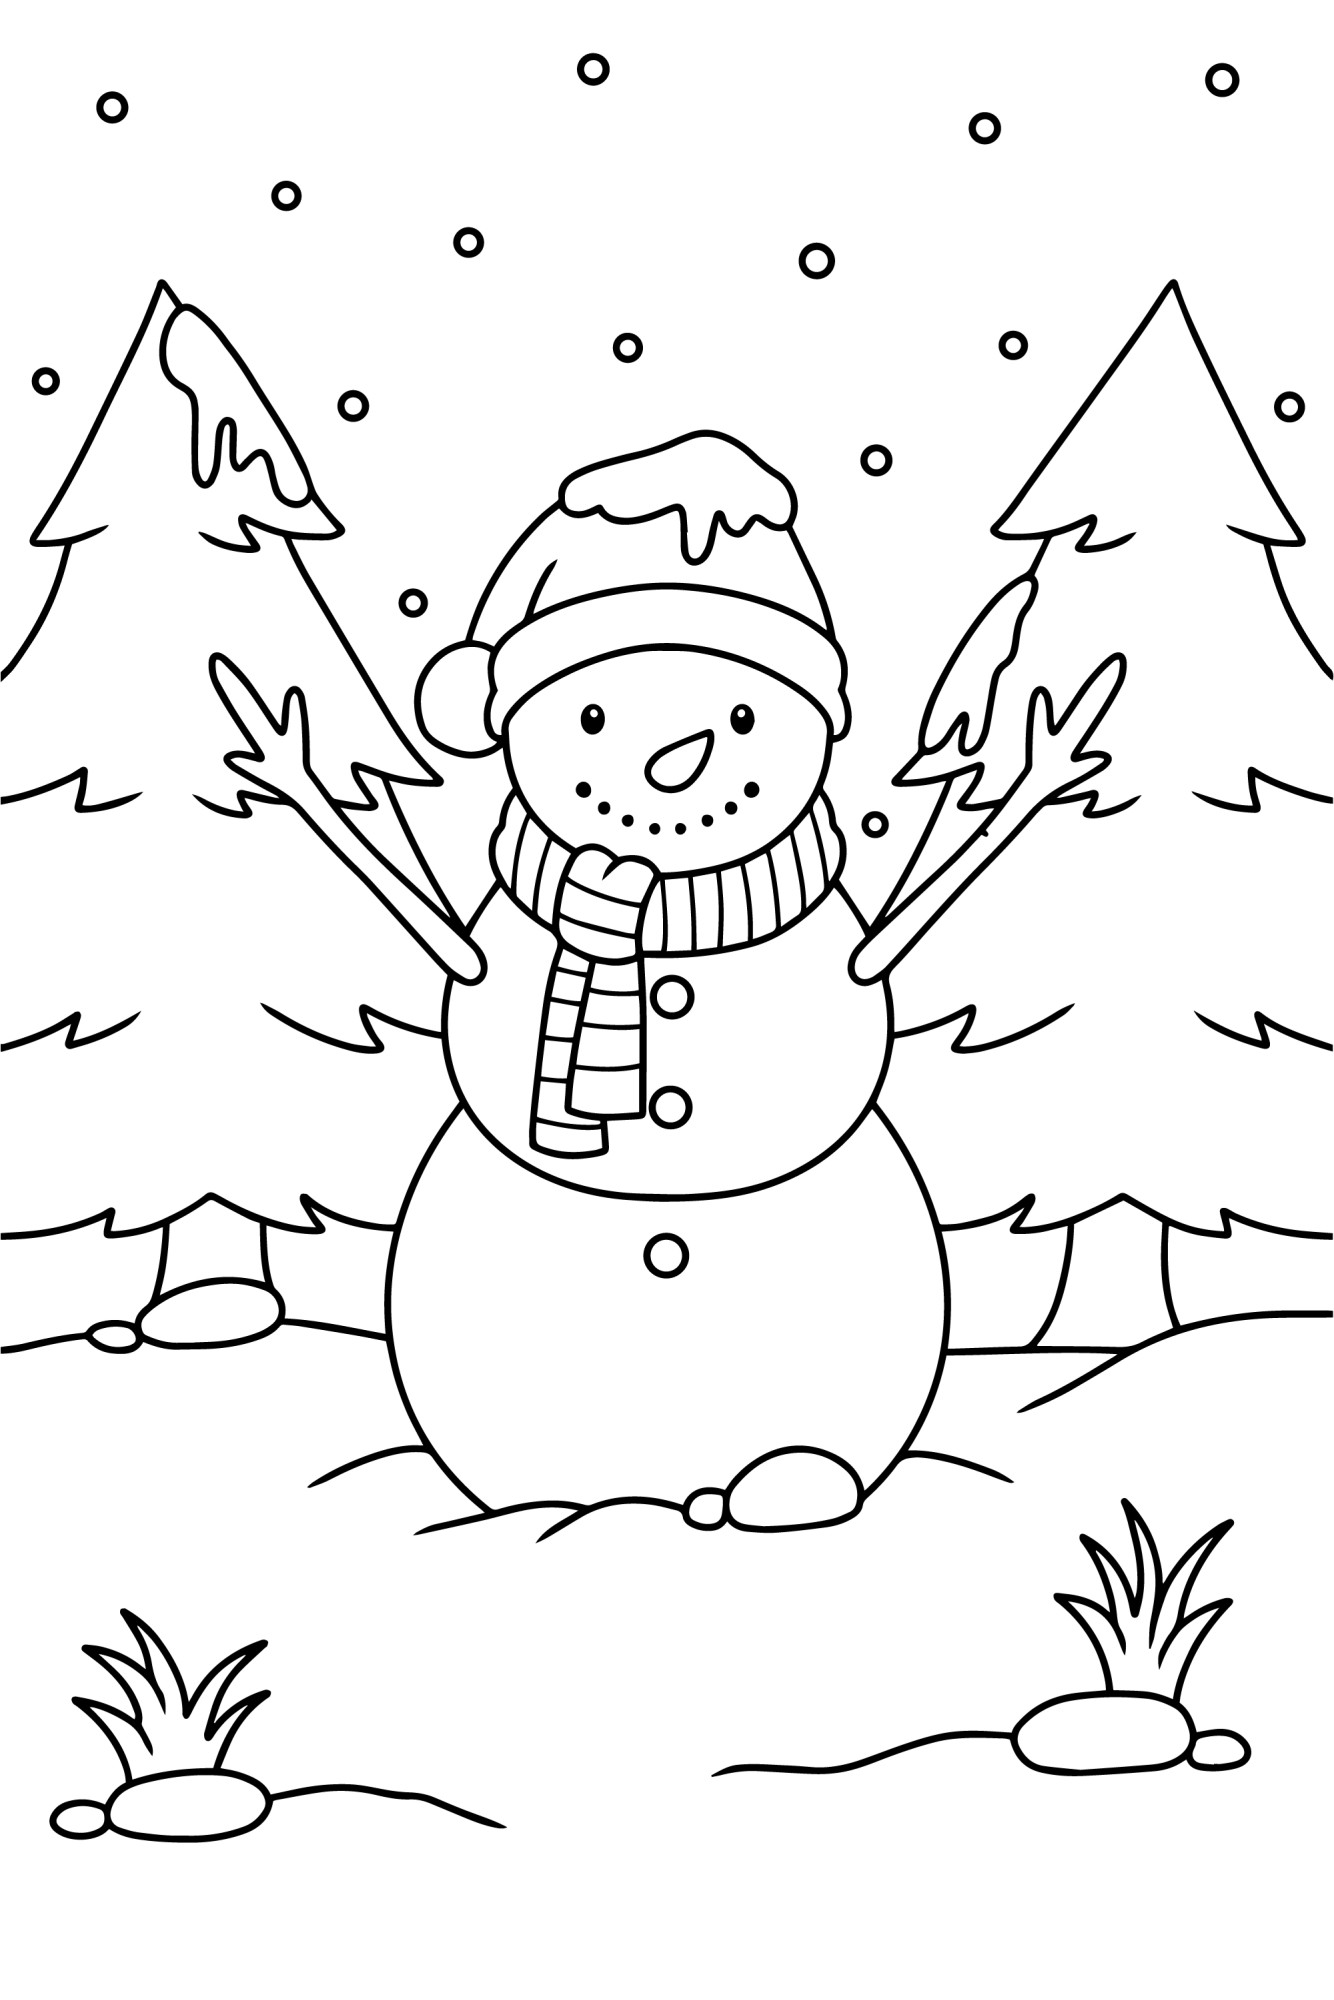 Раскраска для детей: снеговик в зимнем лесу на фоне ёлок